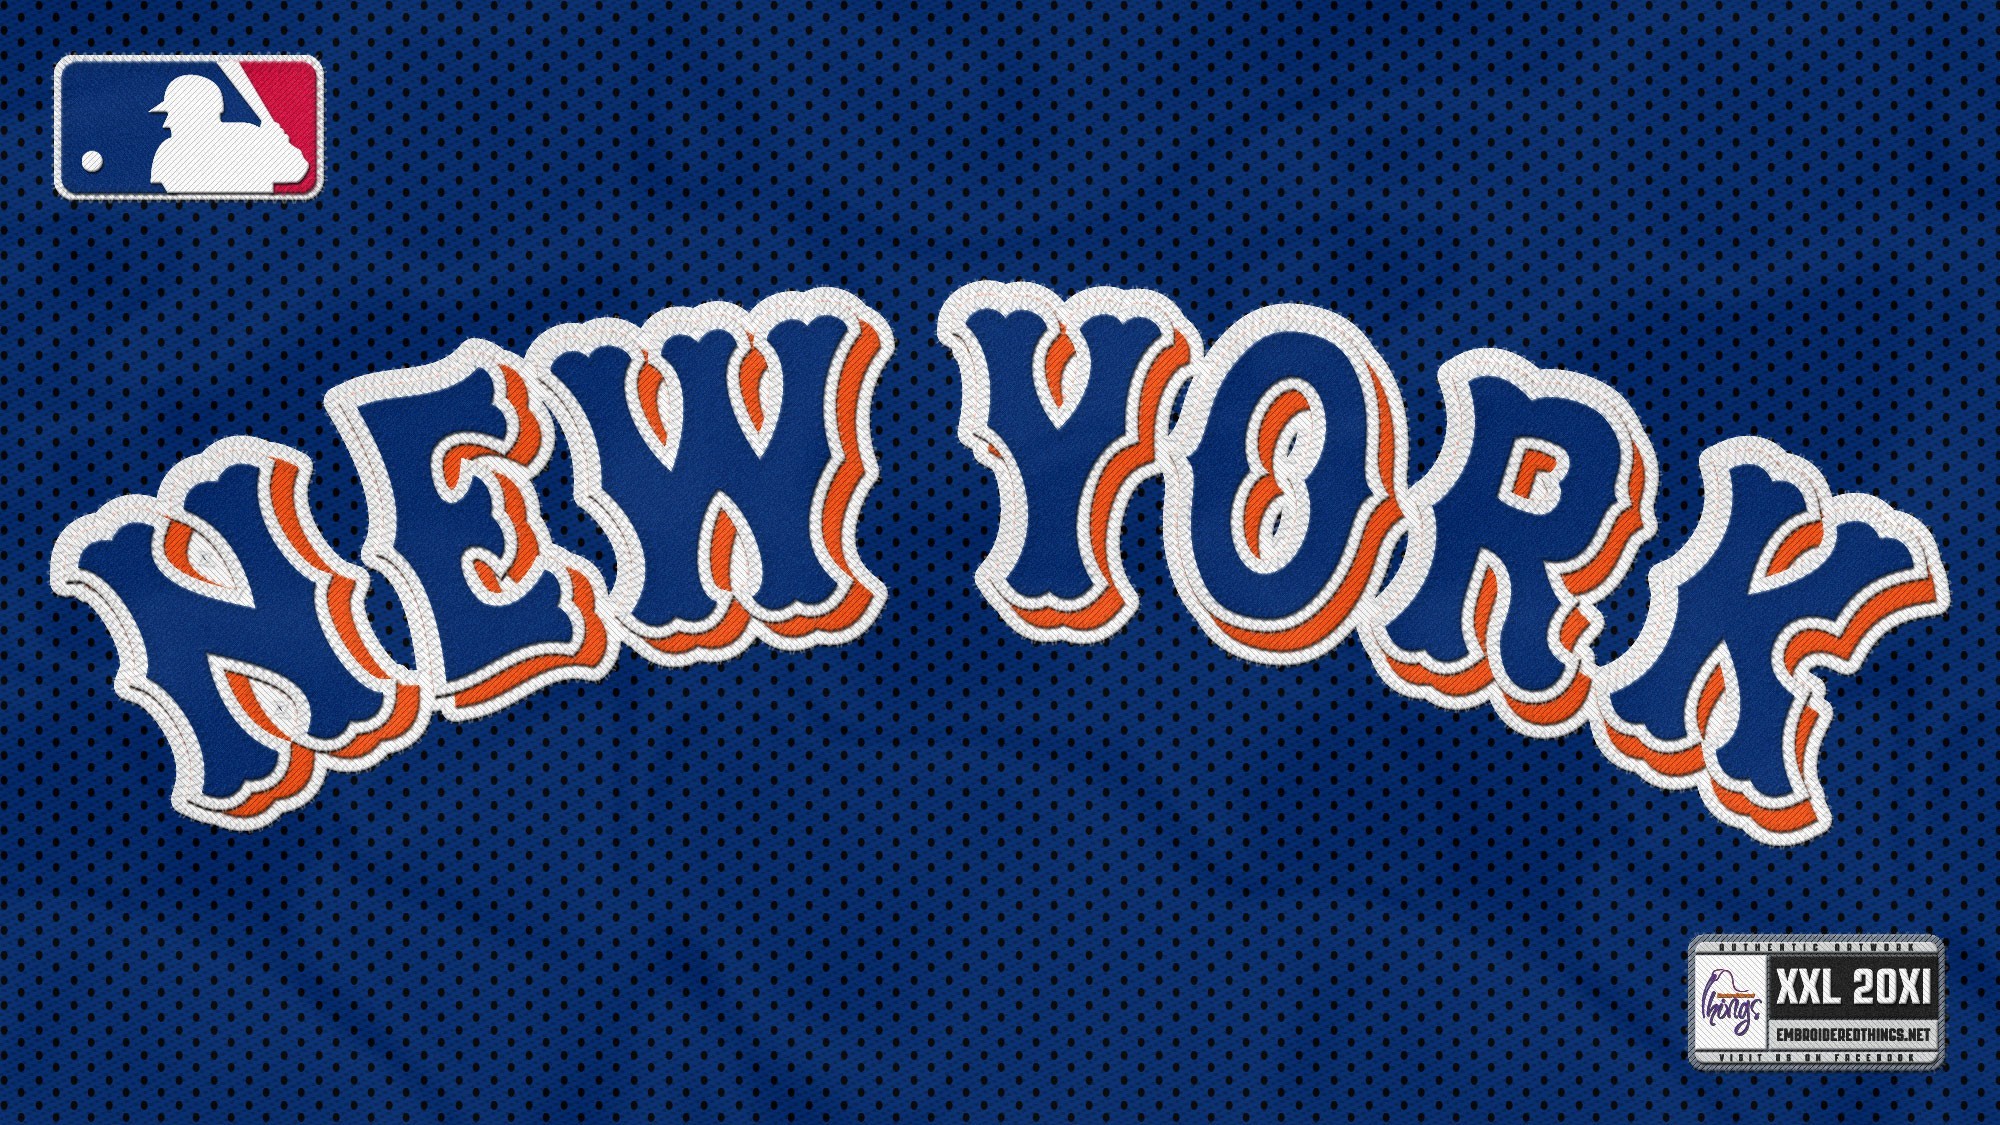 2000x1125 New York Mets Wallpapers